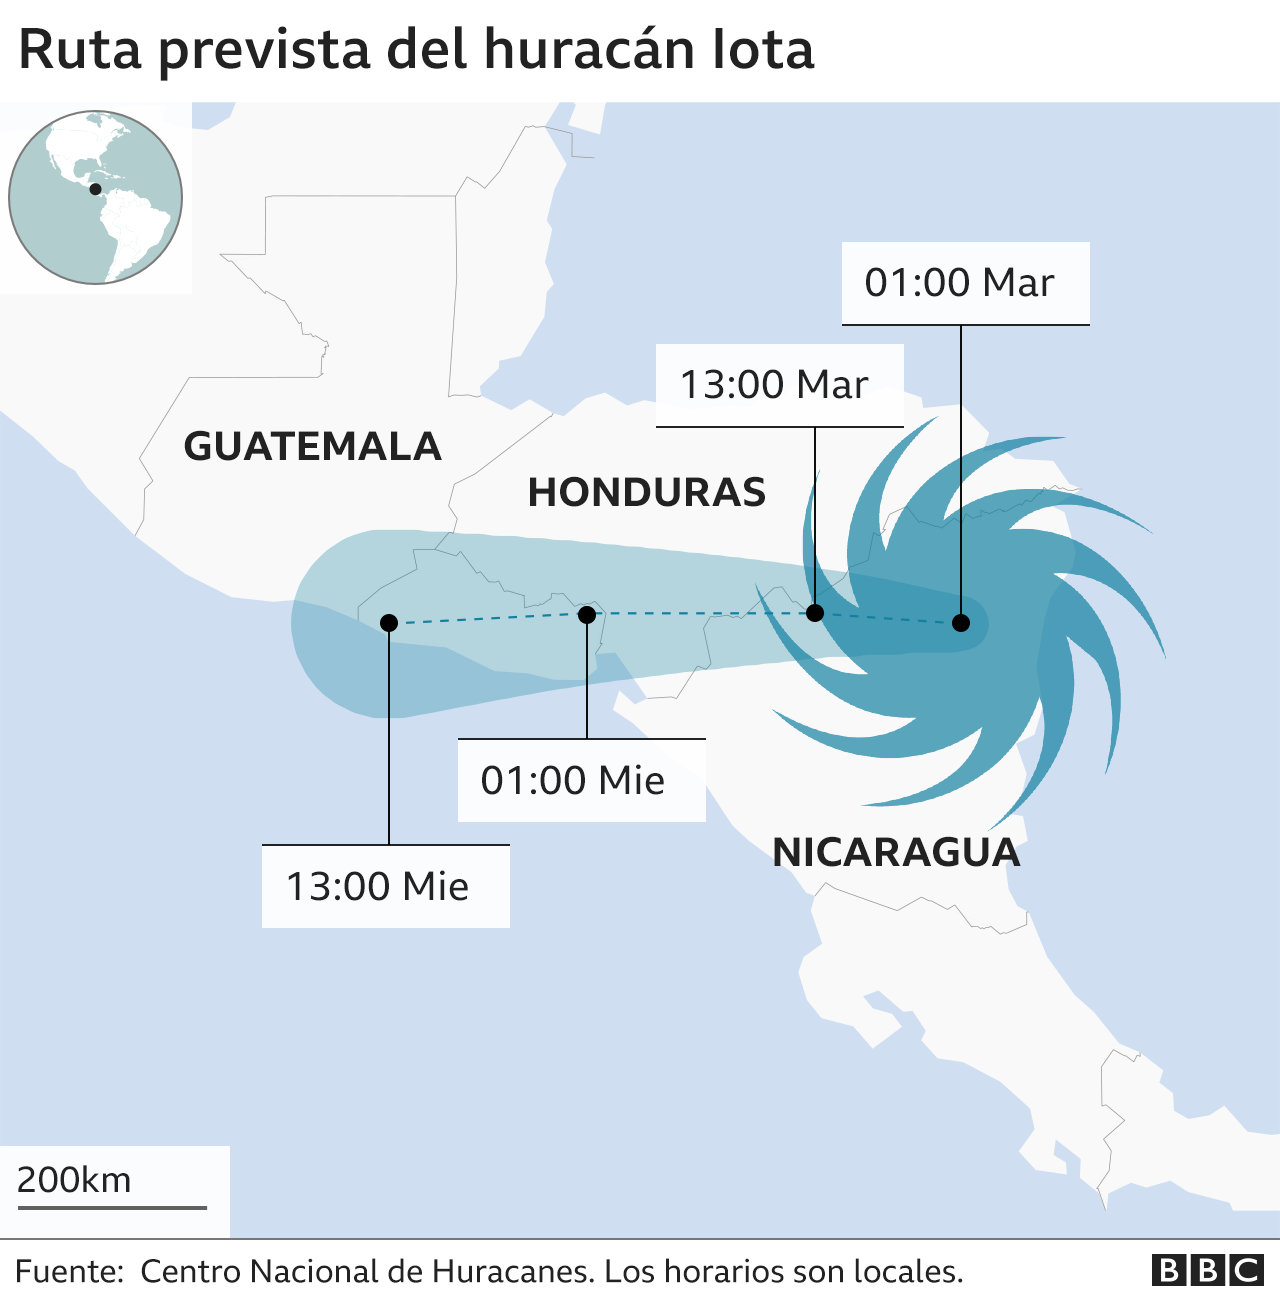 El huracán Iota golpea la costa noreste de Nicaragua - Noticias Viajeras: de Actualidad, Curiosas... - Foro General de Viajes